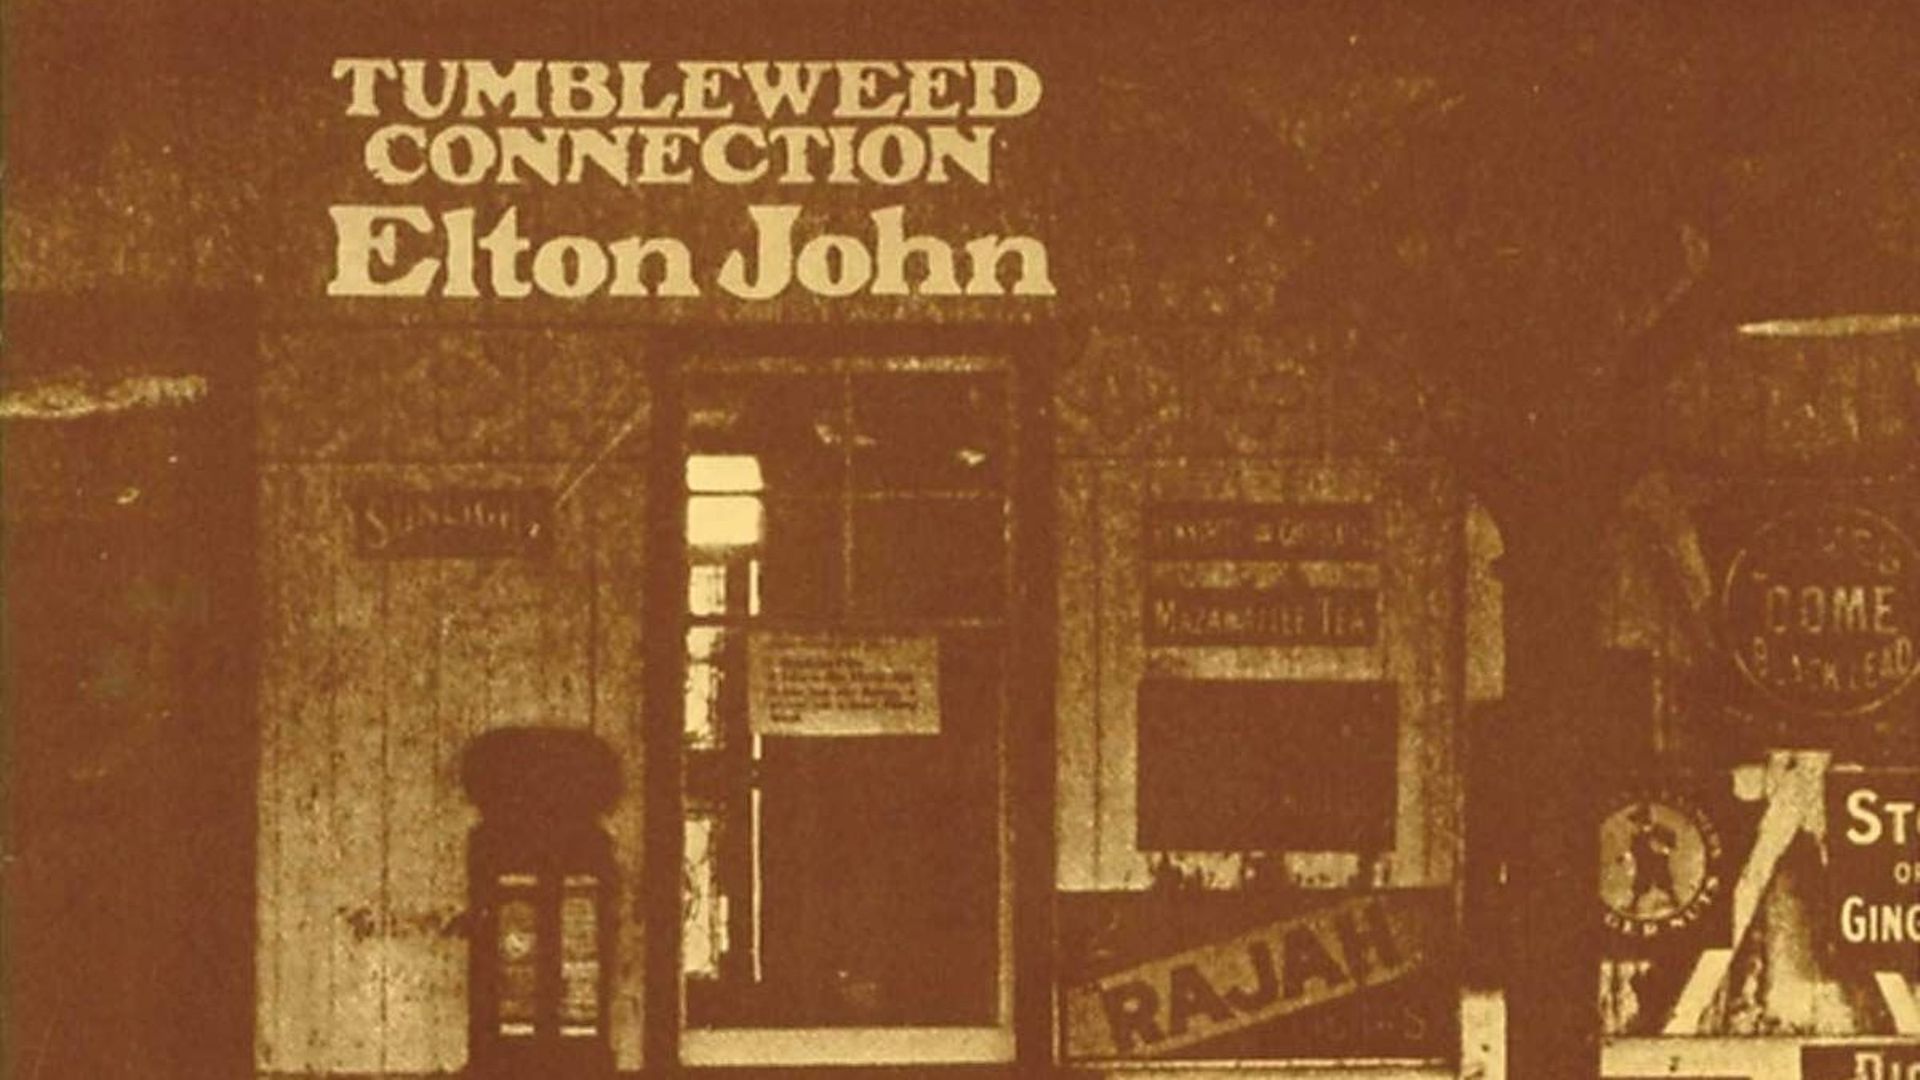 Les 50 ans de "Tumbleweed Connection" d'Elton John